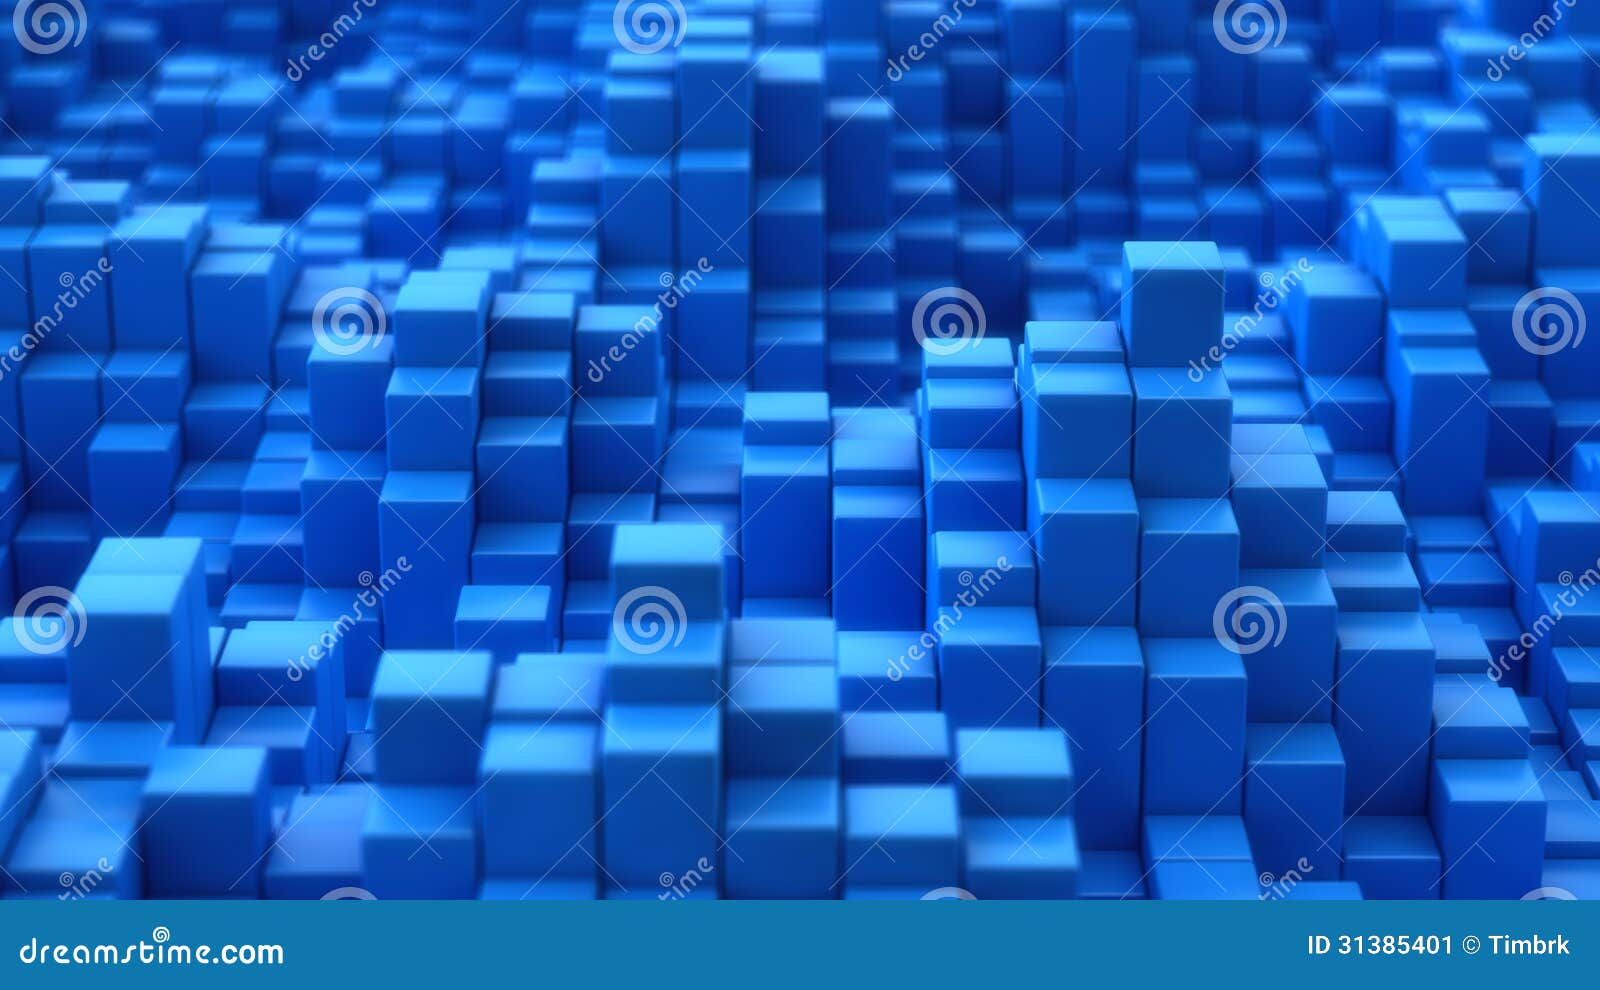 blue convex texture